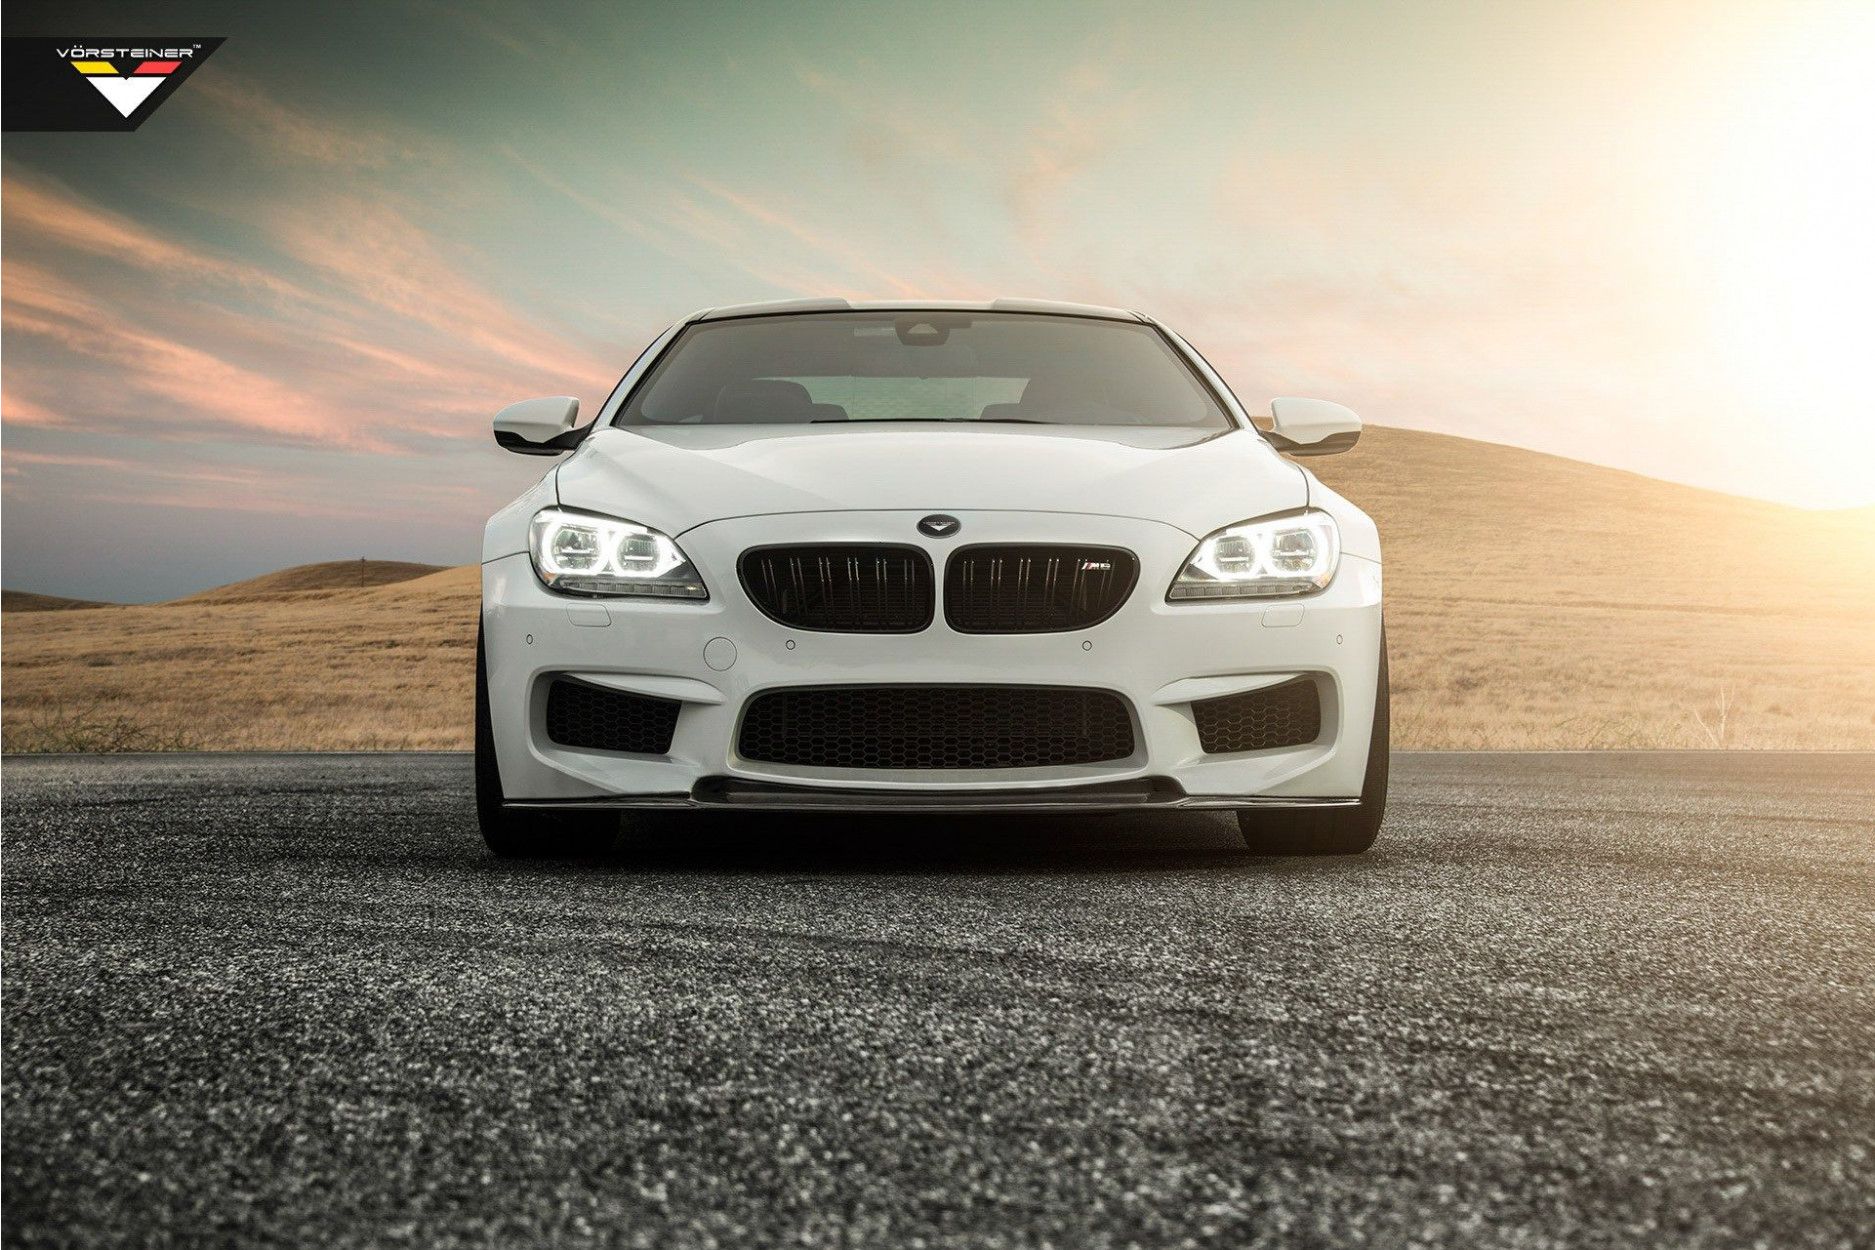 Vorsteiner Carbon Frontlippe Performance ähnlich GTS-V für BMW F12 M6 -  online kaufen bei CFD